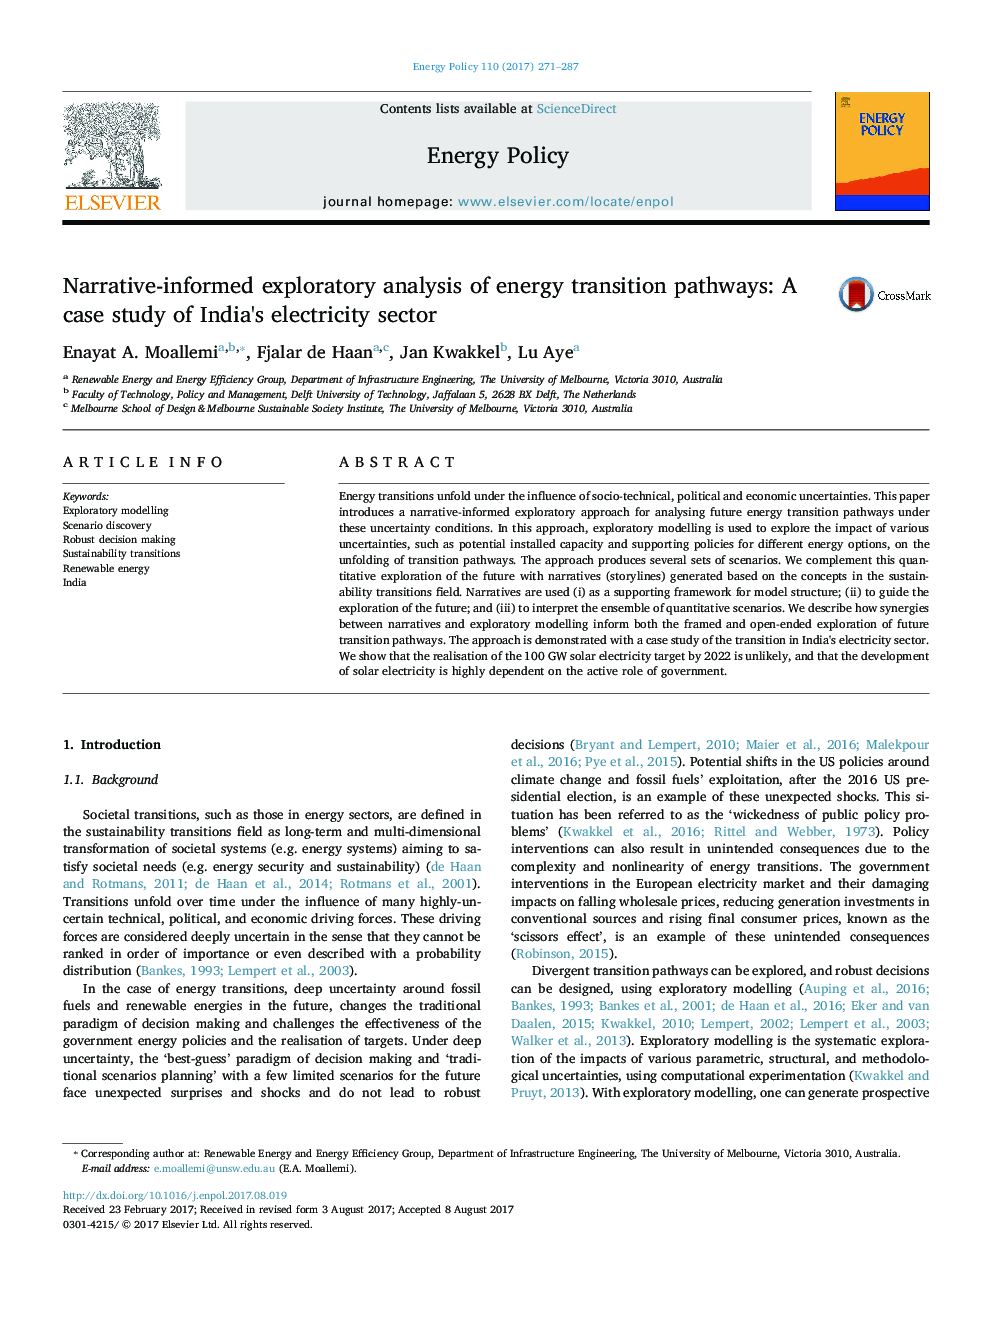 تجزیه و تحلیل اکتشافی روایت آگاهانه از مسیرهای انتقال انرژی: مطالعه موردی در بخش برق هند 